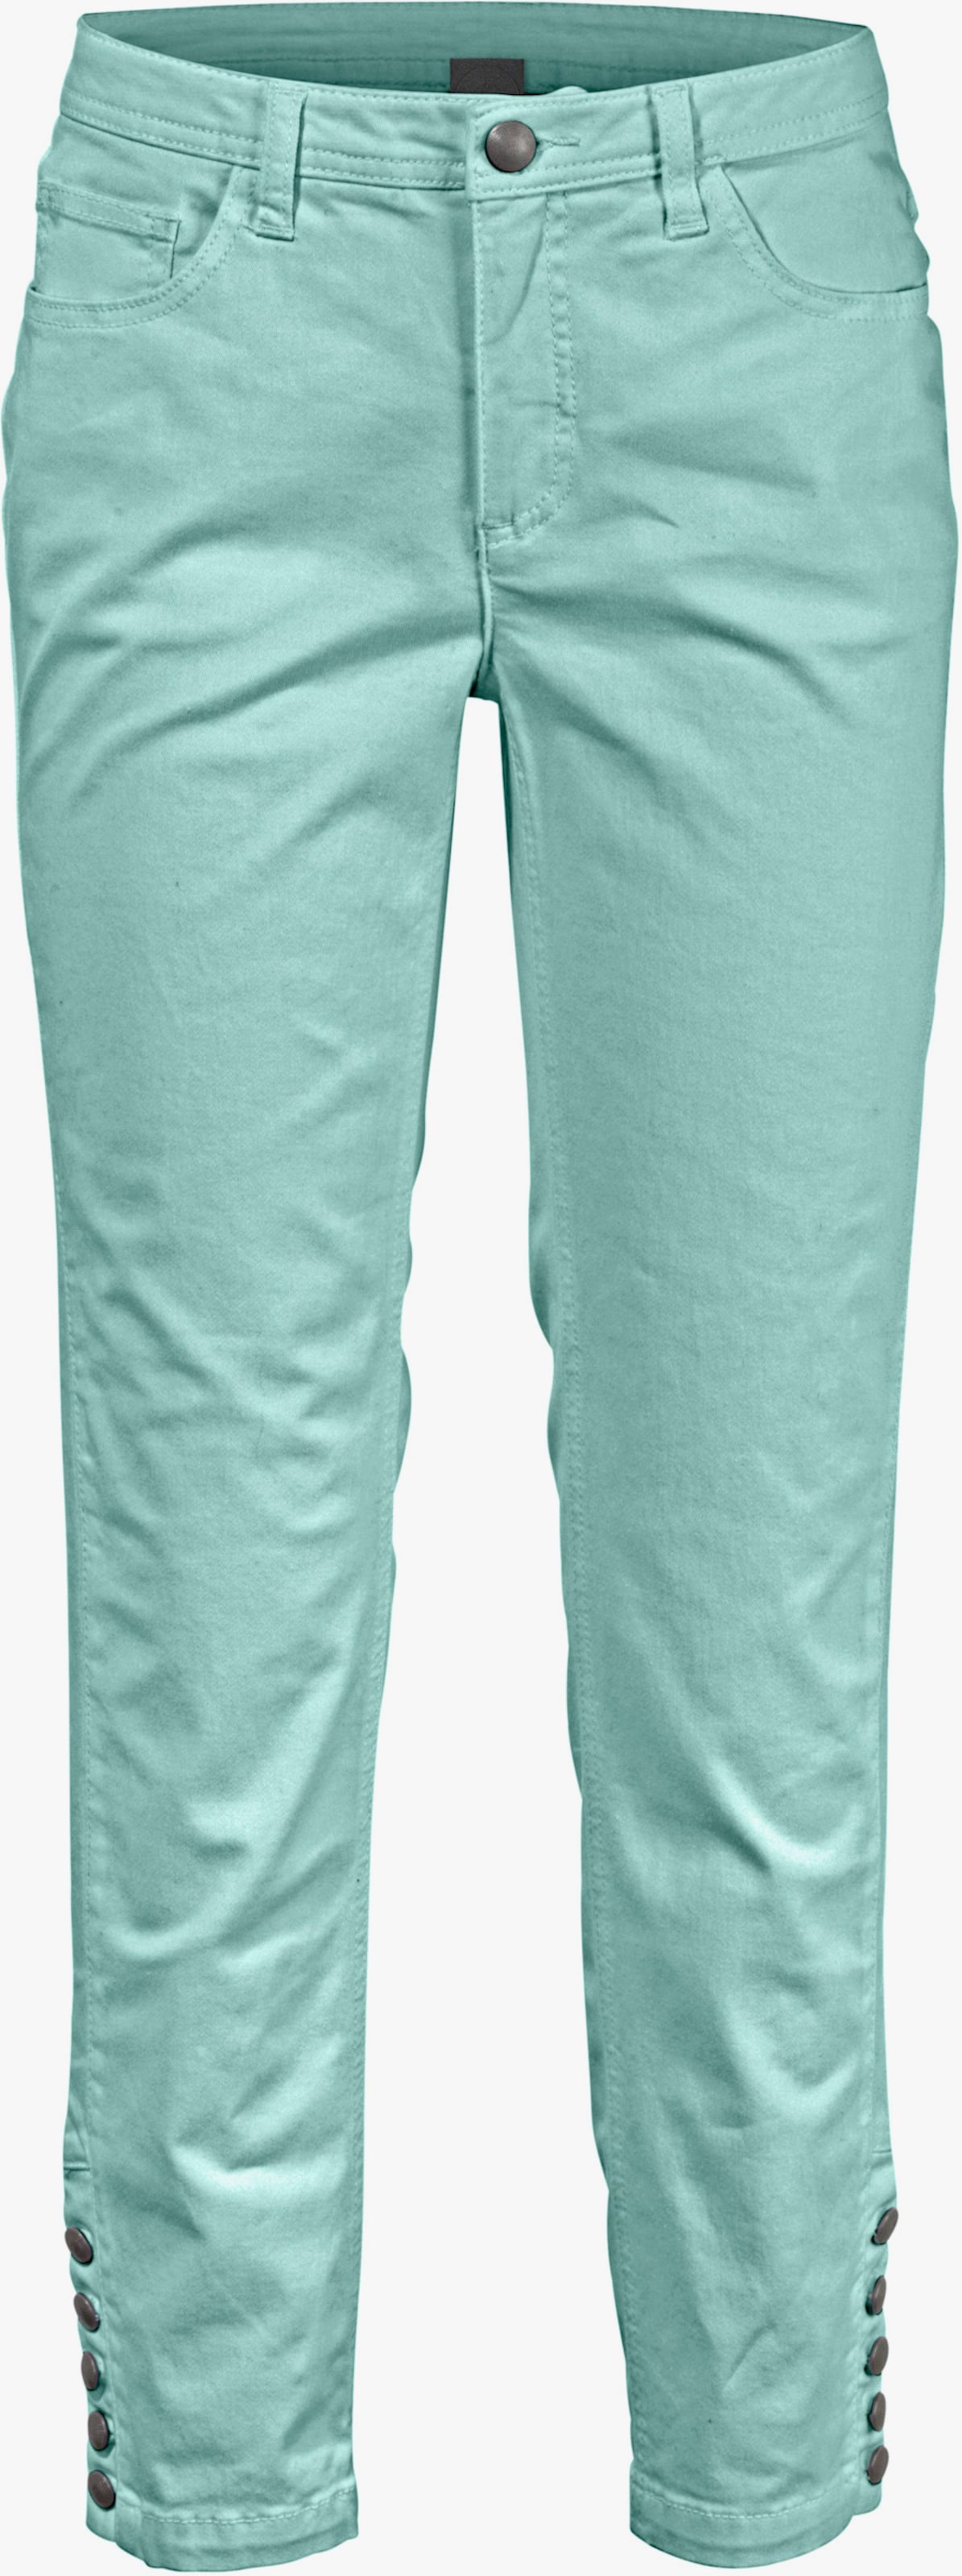 heine Pantalon effet ventre plat - turquoise